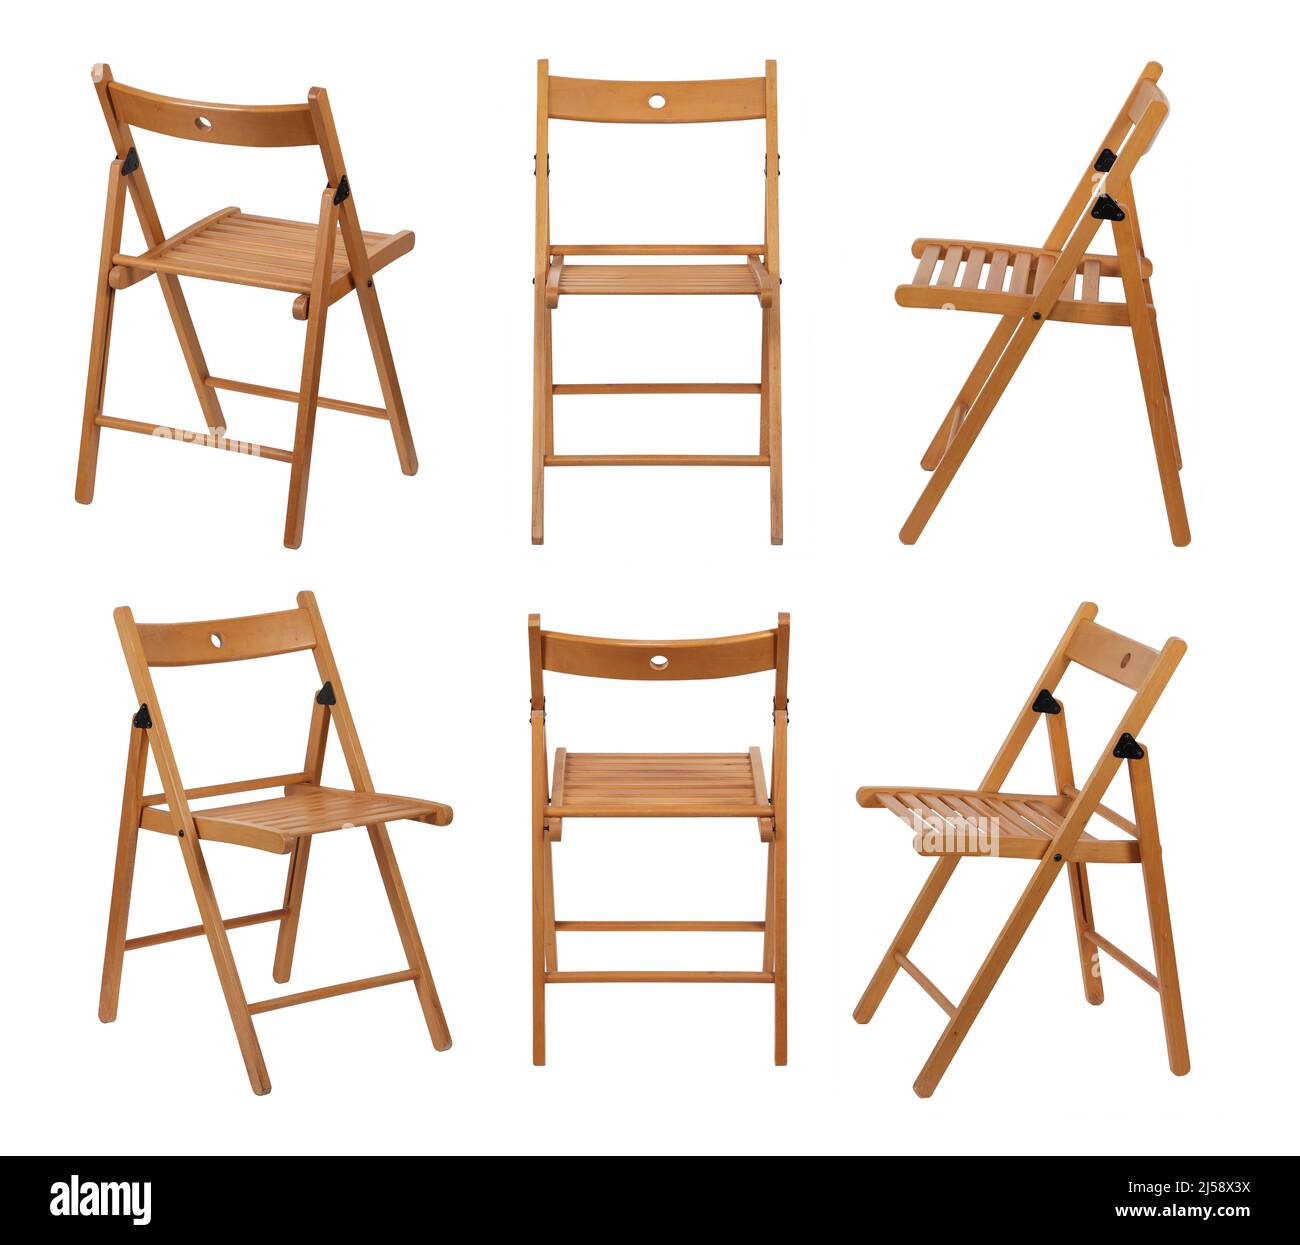 Seis ángulos de una silla de madera plegable en blanco con trazado de recorte Foto de stock